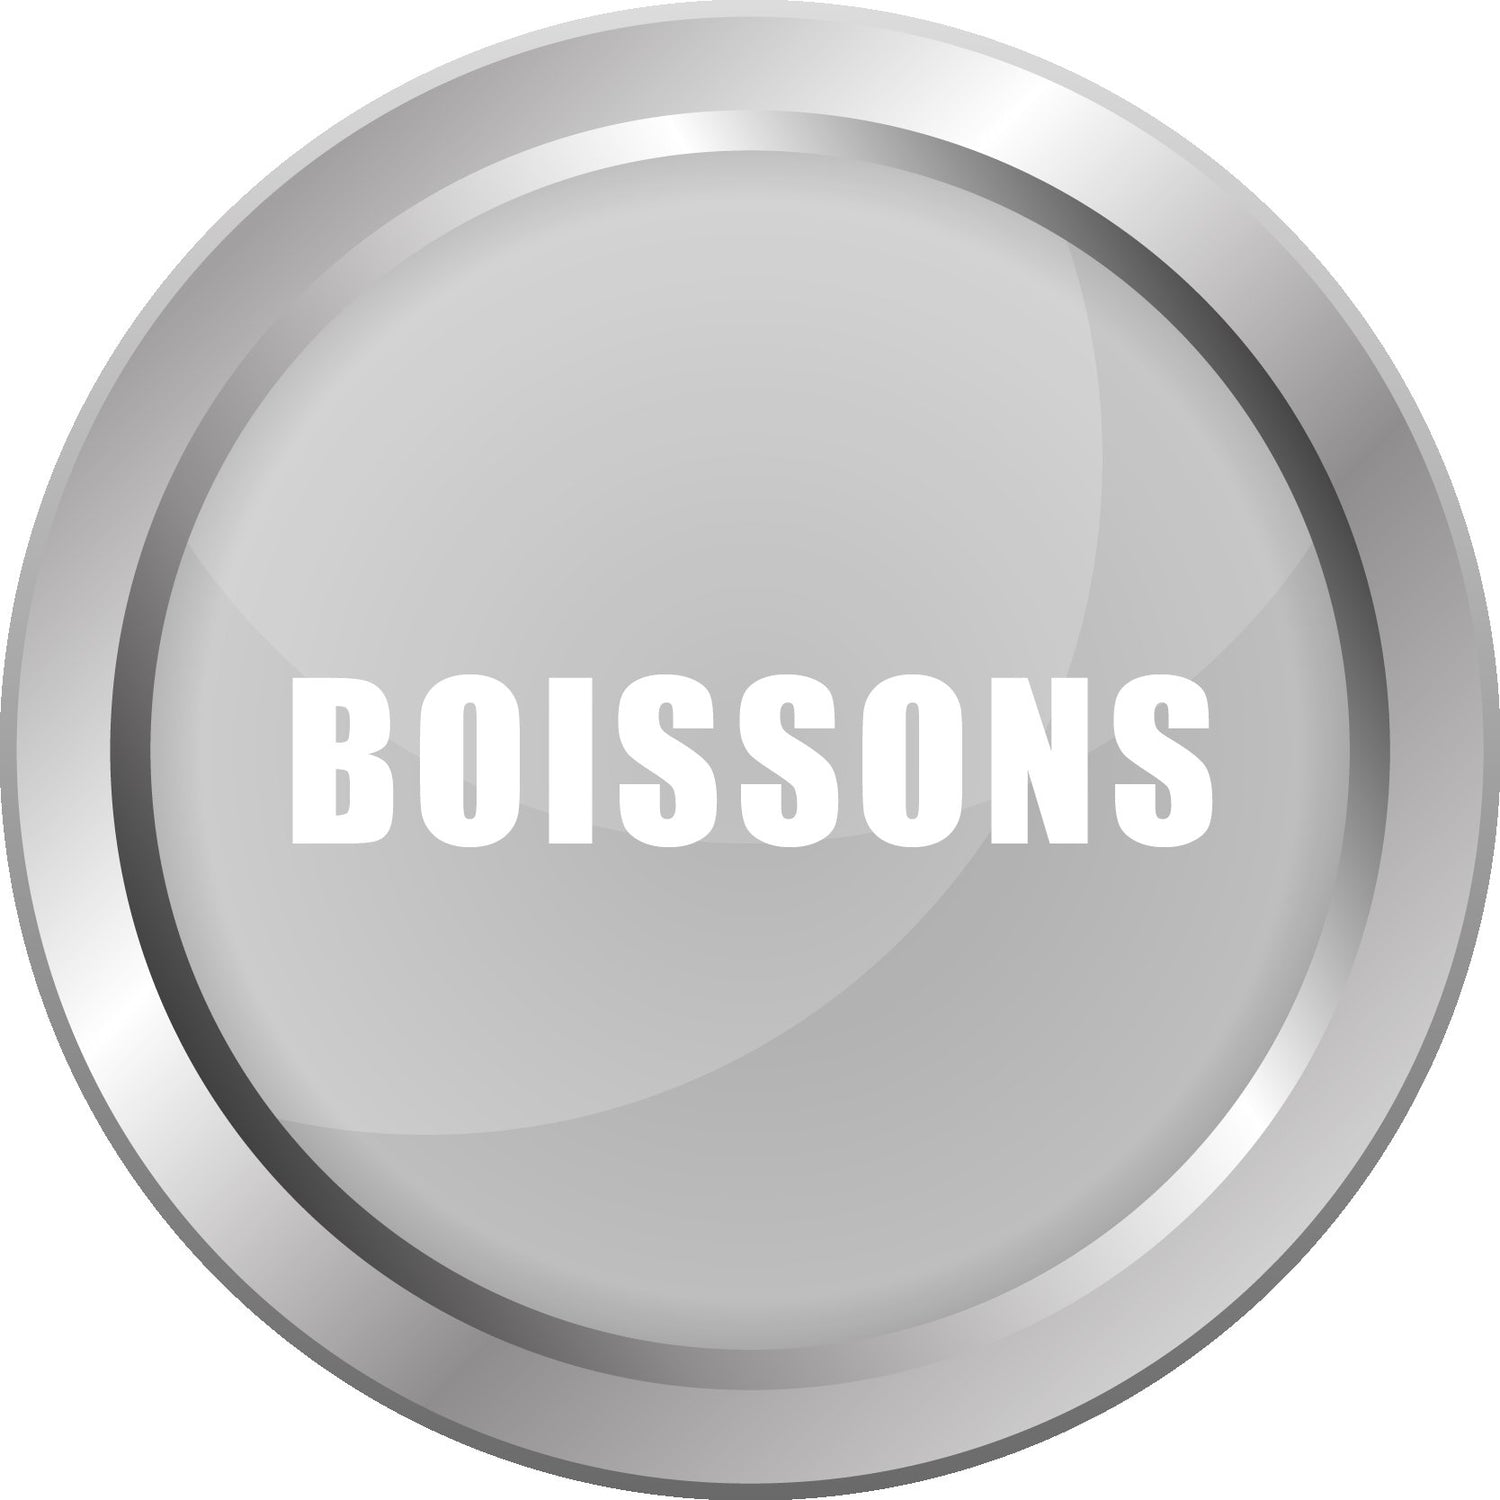 BOISSONS